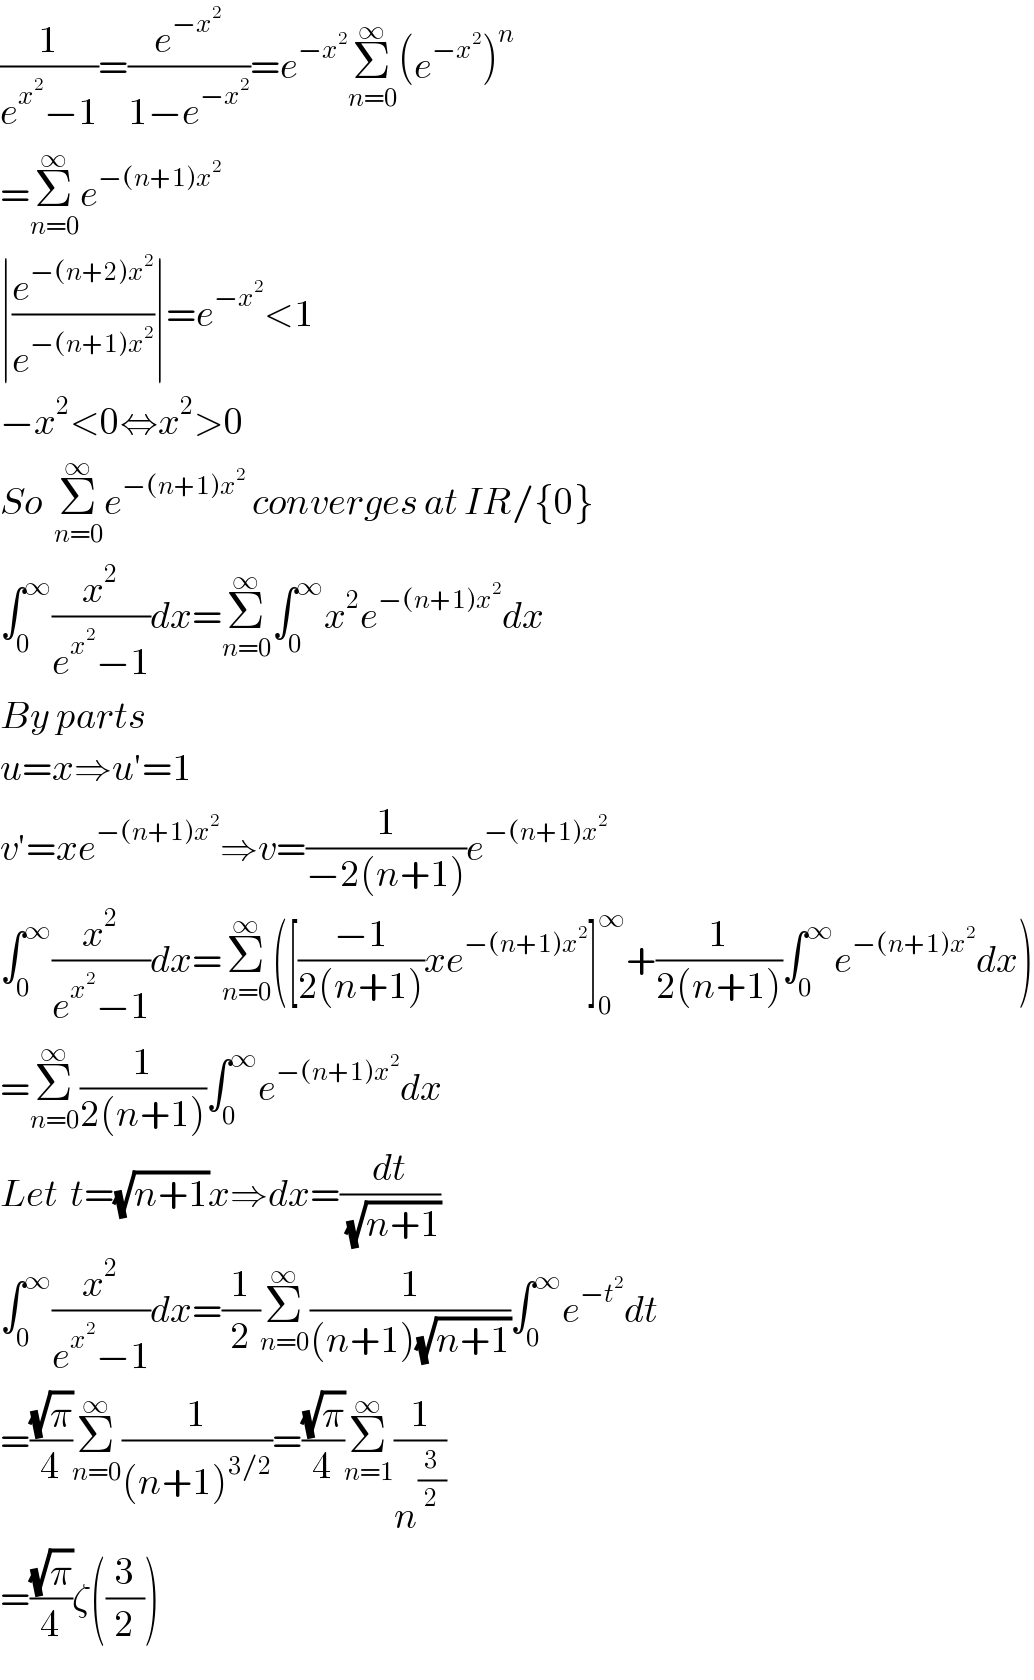 (1/(e^x^2  −1))=(e^(−x^2 ) /(1−e^(−x^2 ) ))=e^(−x^2 ) Σ_(n=0) ^∞ (e^(−x^2 ) )^n   =Σ_(n=0) ^∞ e^(−(n+1)x^2 )   ∣(e^(−(n+2)x^2 ) /e^(−(n+1)x^2 ) )∣=e^(−x^2 ) <1  −x^2 <0⇔x^2 >0  So  Σ_(n=0) ^∞ e^(−(n+1)x^2 )  converges at IR/{0}  ∫_0 ^∞ (x^2 /(e^x^2  −1))dx=Σ_(n=0) ^∞ ∫_0 ^∞ x^2 e^(−(n+1)x^2 ) dx  By parts   u=x⇒u′=1  v′=xe^(−(n+1)x^2 ) ⇒v=(1/(−2(n+1)))e^(−(n+1)x^2 )   ∫_0 ^∞ (x^2 /(e^x^2  −1))dx=Σ_(n=0) ^∞ ([((−1)/(2(n+1)))xe^(−(n+1)x^2 ) ]_0 ^∞ +(1/(2(n+1)))∫_0 ^∞ e^(−(n+1)x^2 ) dx)  =Σ_(n=0) ^∞ (1/(2(n+1)))∫_0 ^∞ e^(−(n+1)x^2 ) dx  Let  t=(√(n+1))x⇒dx=(dt/(√(n+1)))  ∫_0 ^∞ (x^2 /(e^x^2  −1))dx=(1/2)Σ_(n=0) ^∞ (1/((n+1)(√(n+1))))∫_0 ^∞ e^(−t^2 ) dt  =((√π)/4)Σ_(n=0) ^∞ (1/((n+1)^(3/2) ))=((√π)/4)Σ_(n=1) ^∞ (1/n^(3/2) )  =((√π)/4)ζ((3/2))  